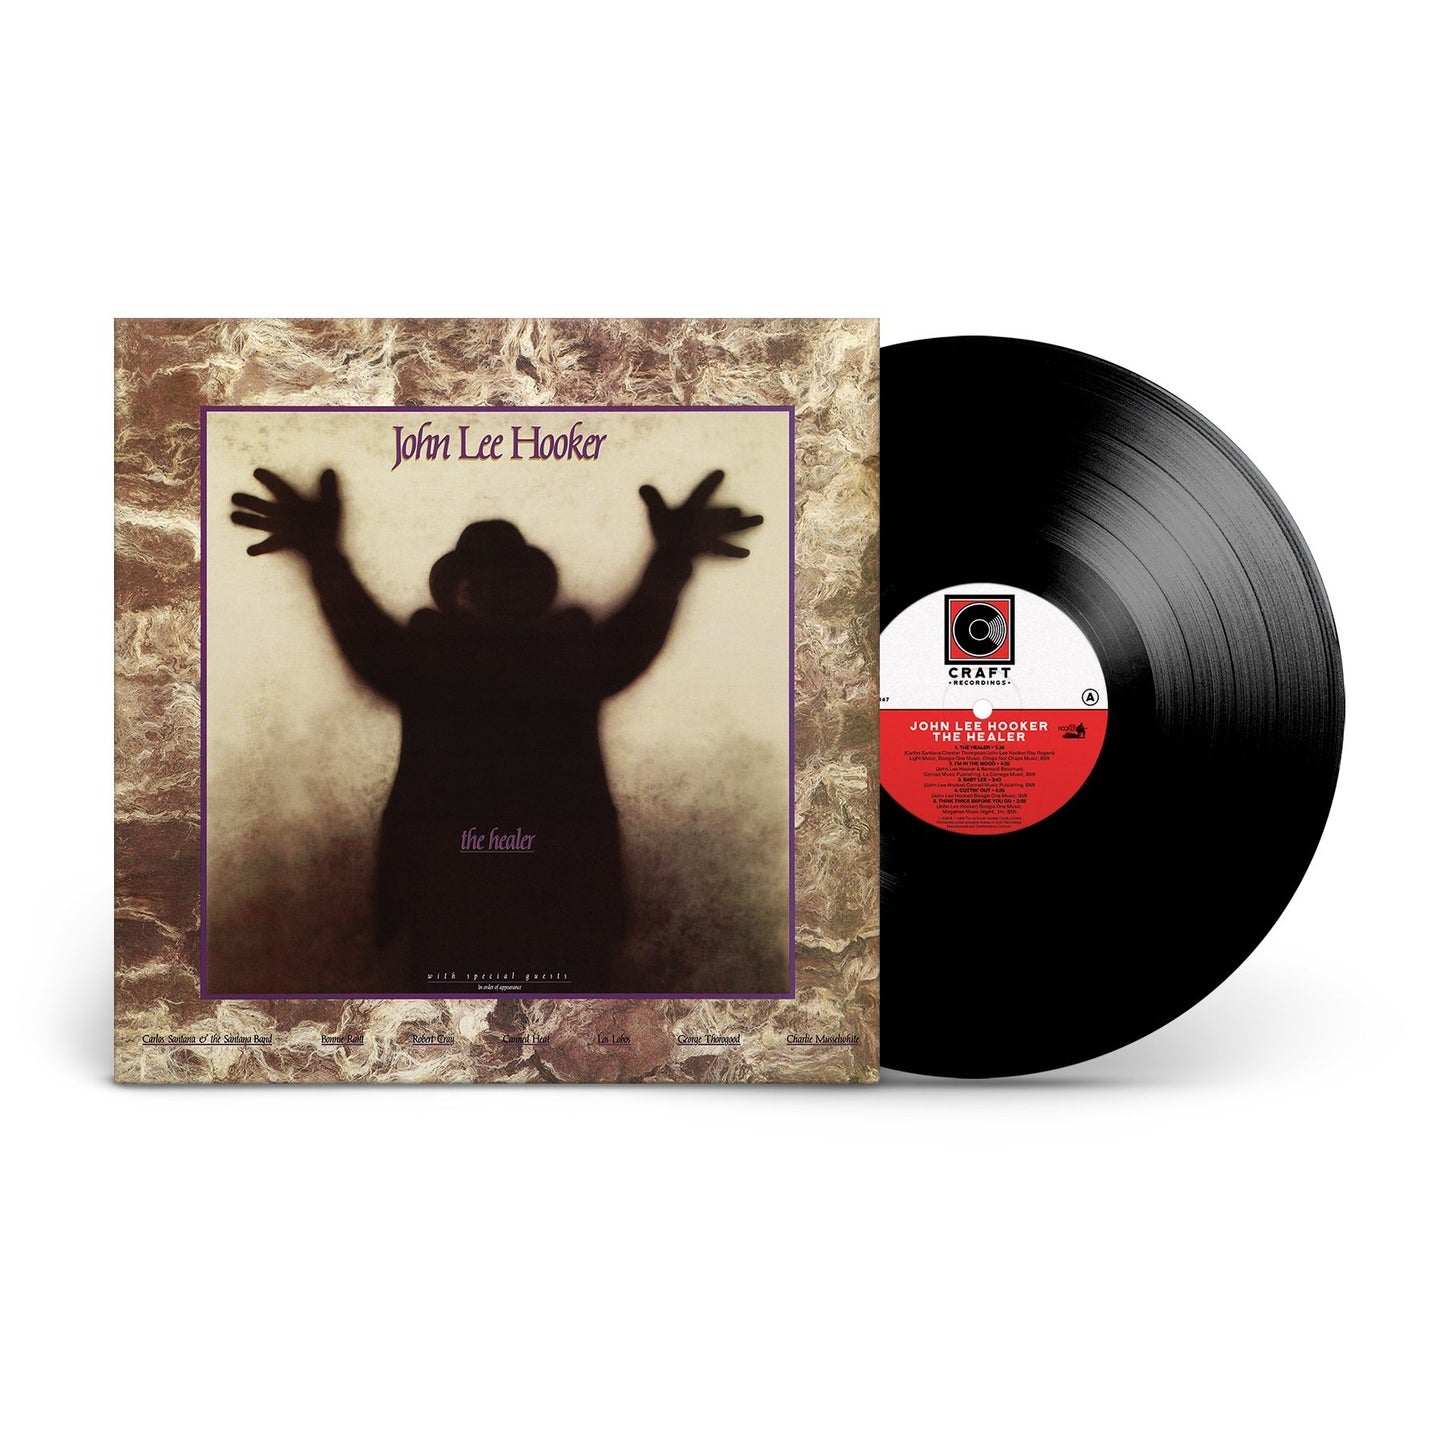 John Lee Hooker "The Healer" LP